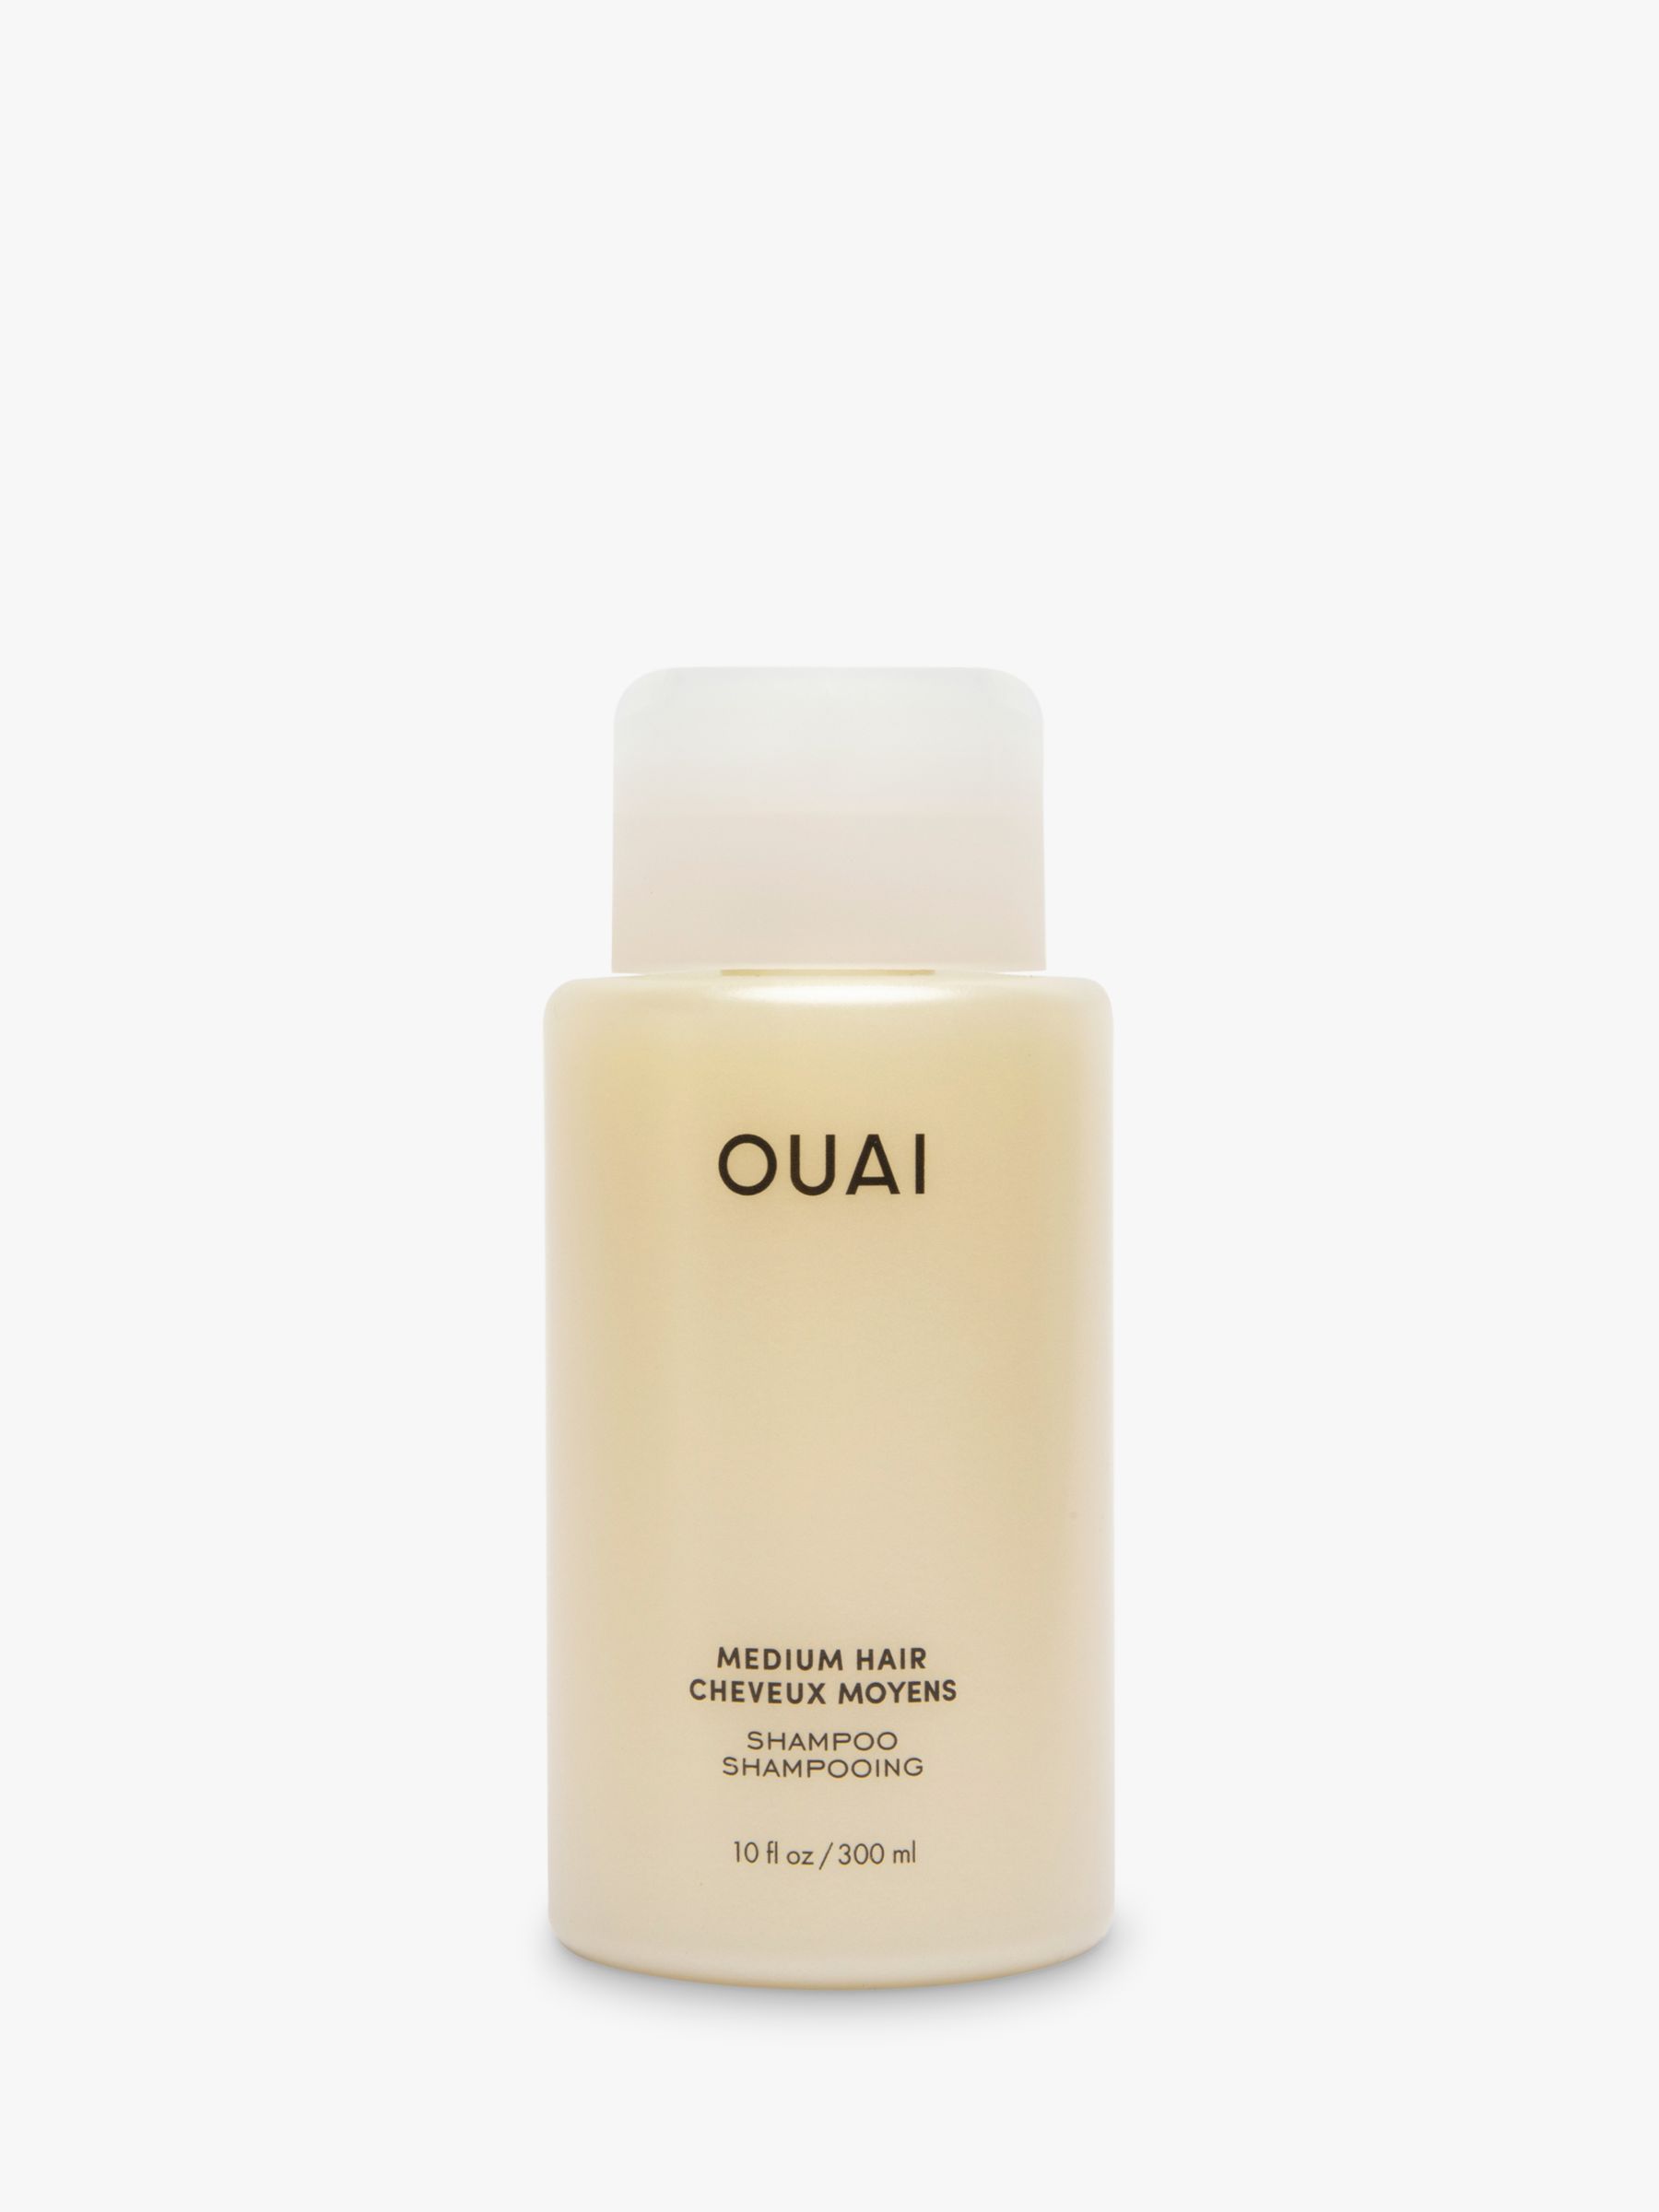 OUAI Medium Hair Shampoo, 300ml